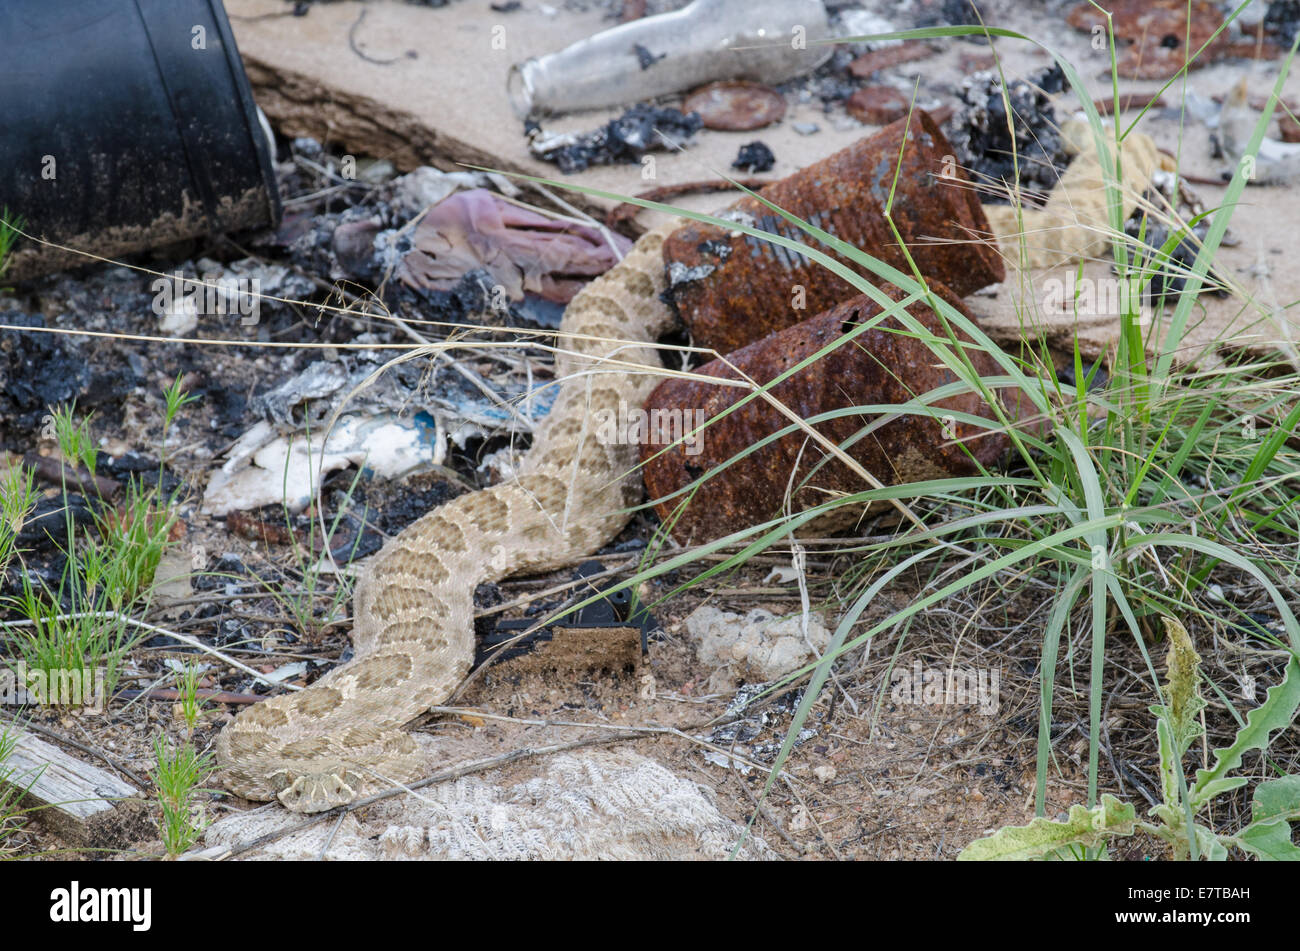 Crotale des Prairies, (Crotalus viridis), ramper dans une décharge illégale du site. Valencia Co., New Mexico, USA. Banque D'Images